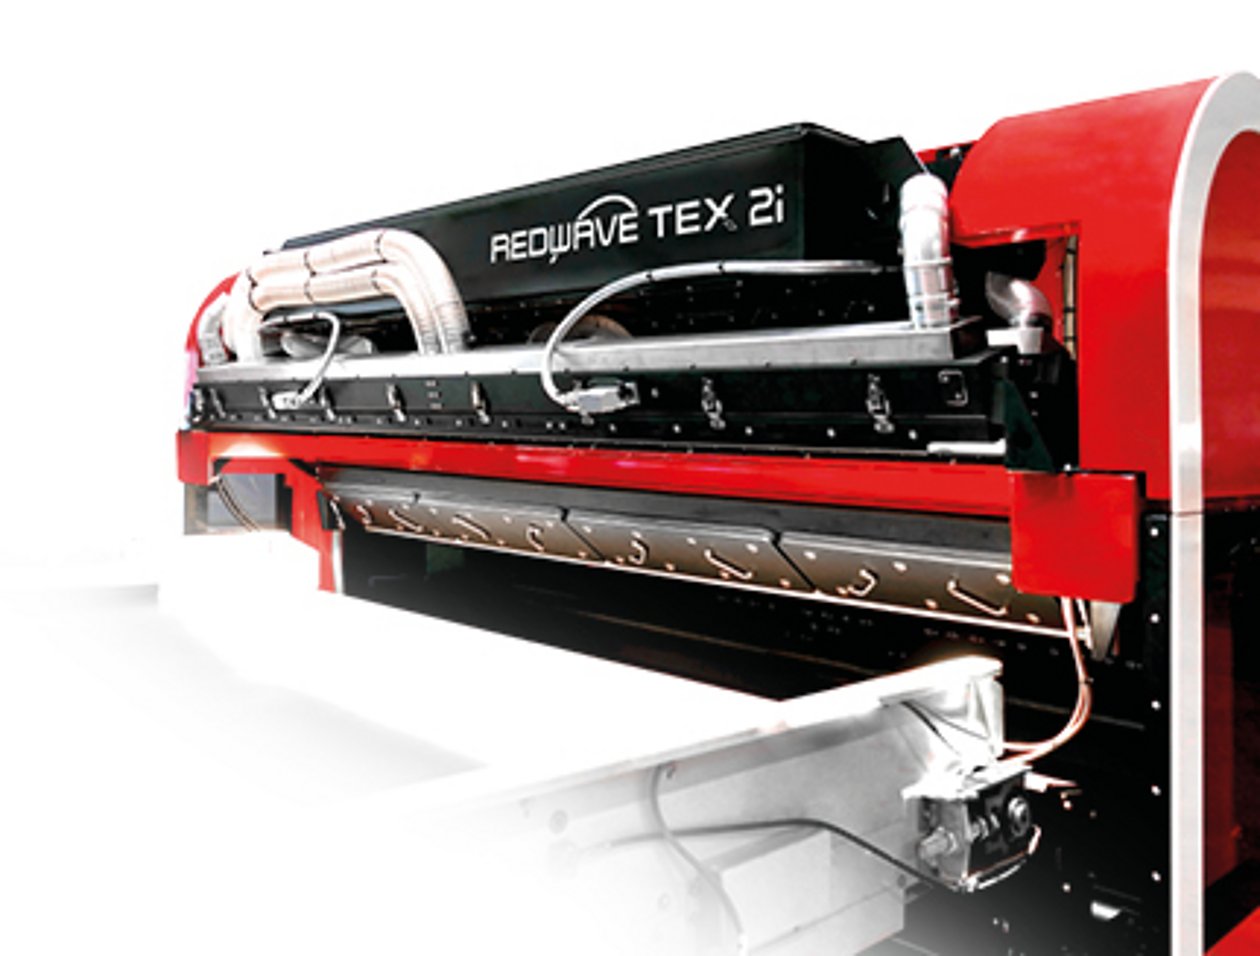 REDWAVE TEX - Sortierlösungen für Textilrecycling - REDWAVE TEX 2i